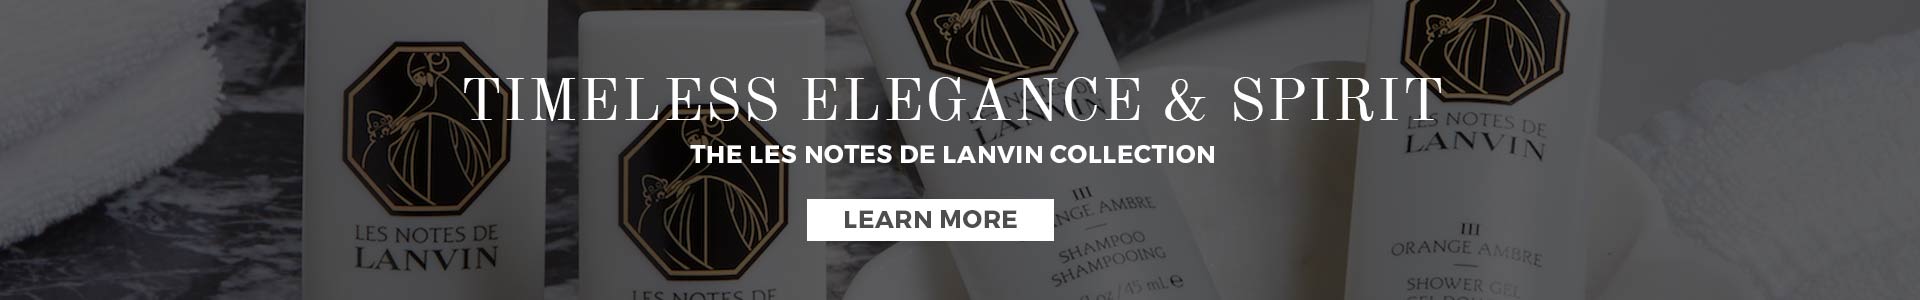 Les Notes de Lanvin promo